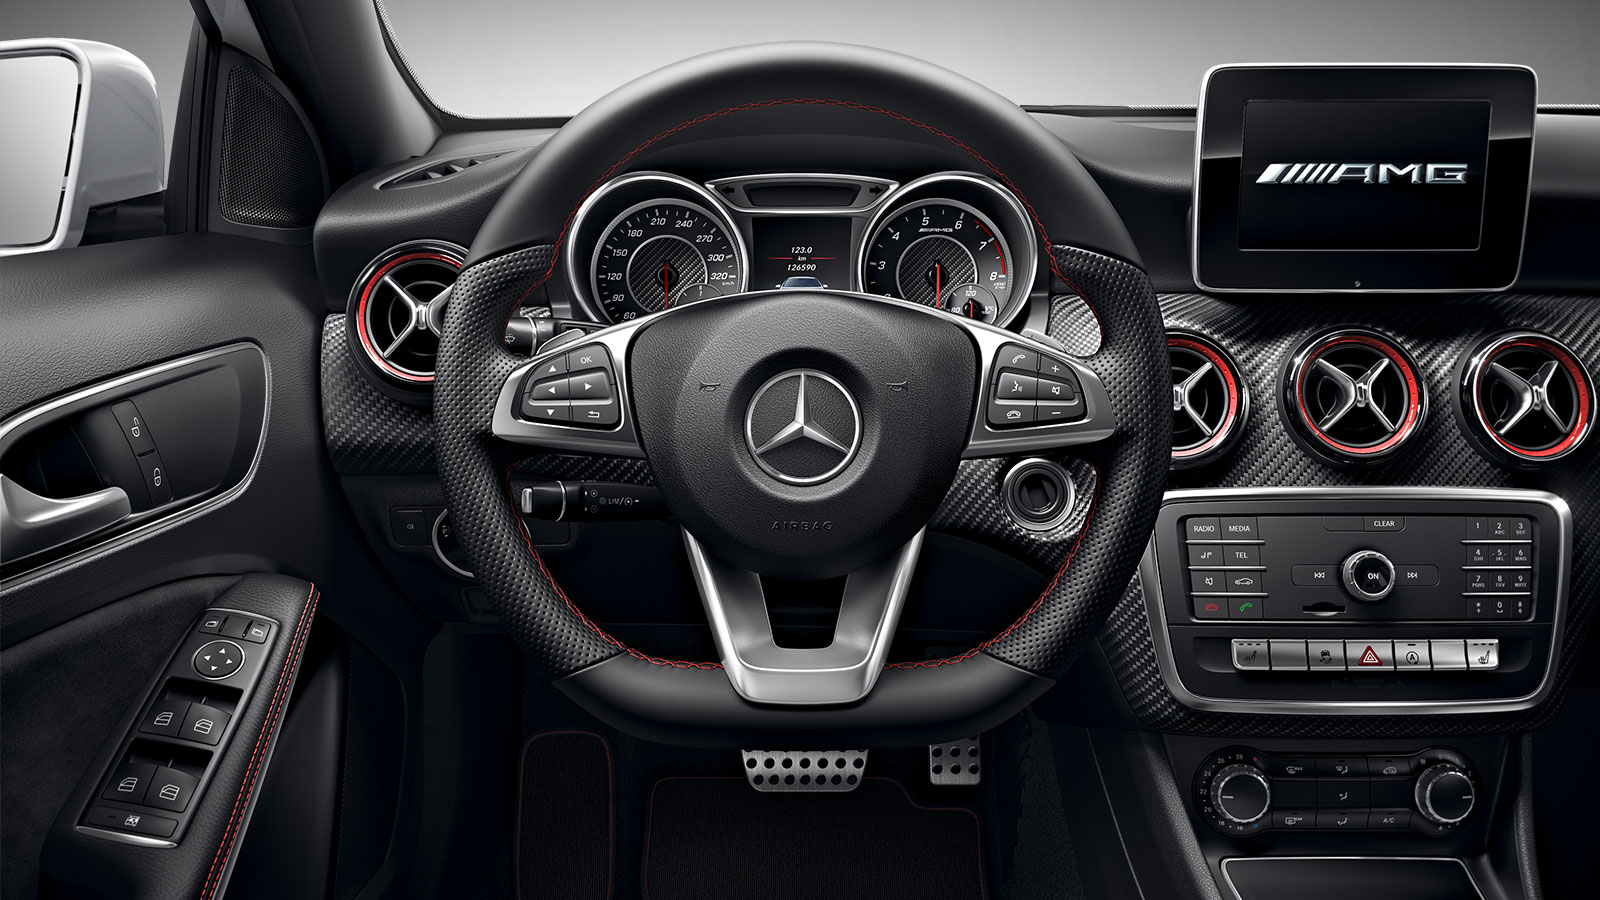 Mercedes Benz A Class A200 D Sport Interior Image Gallery ...